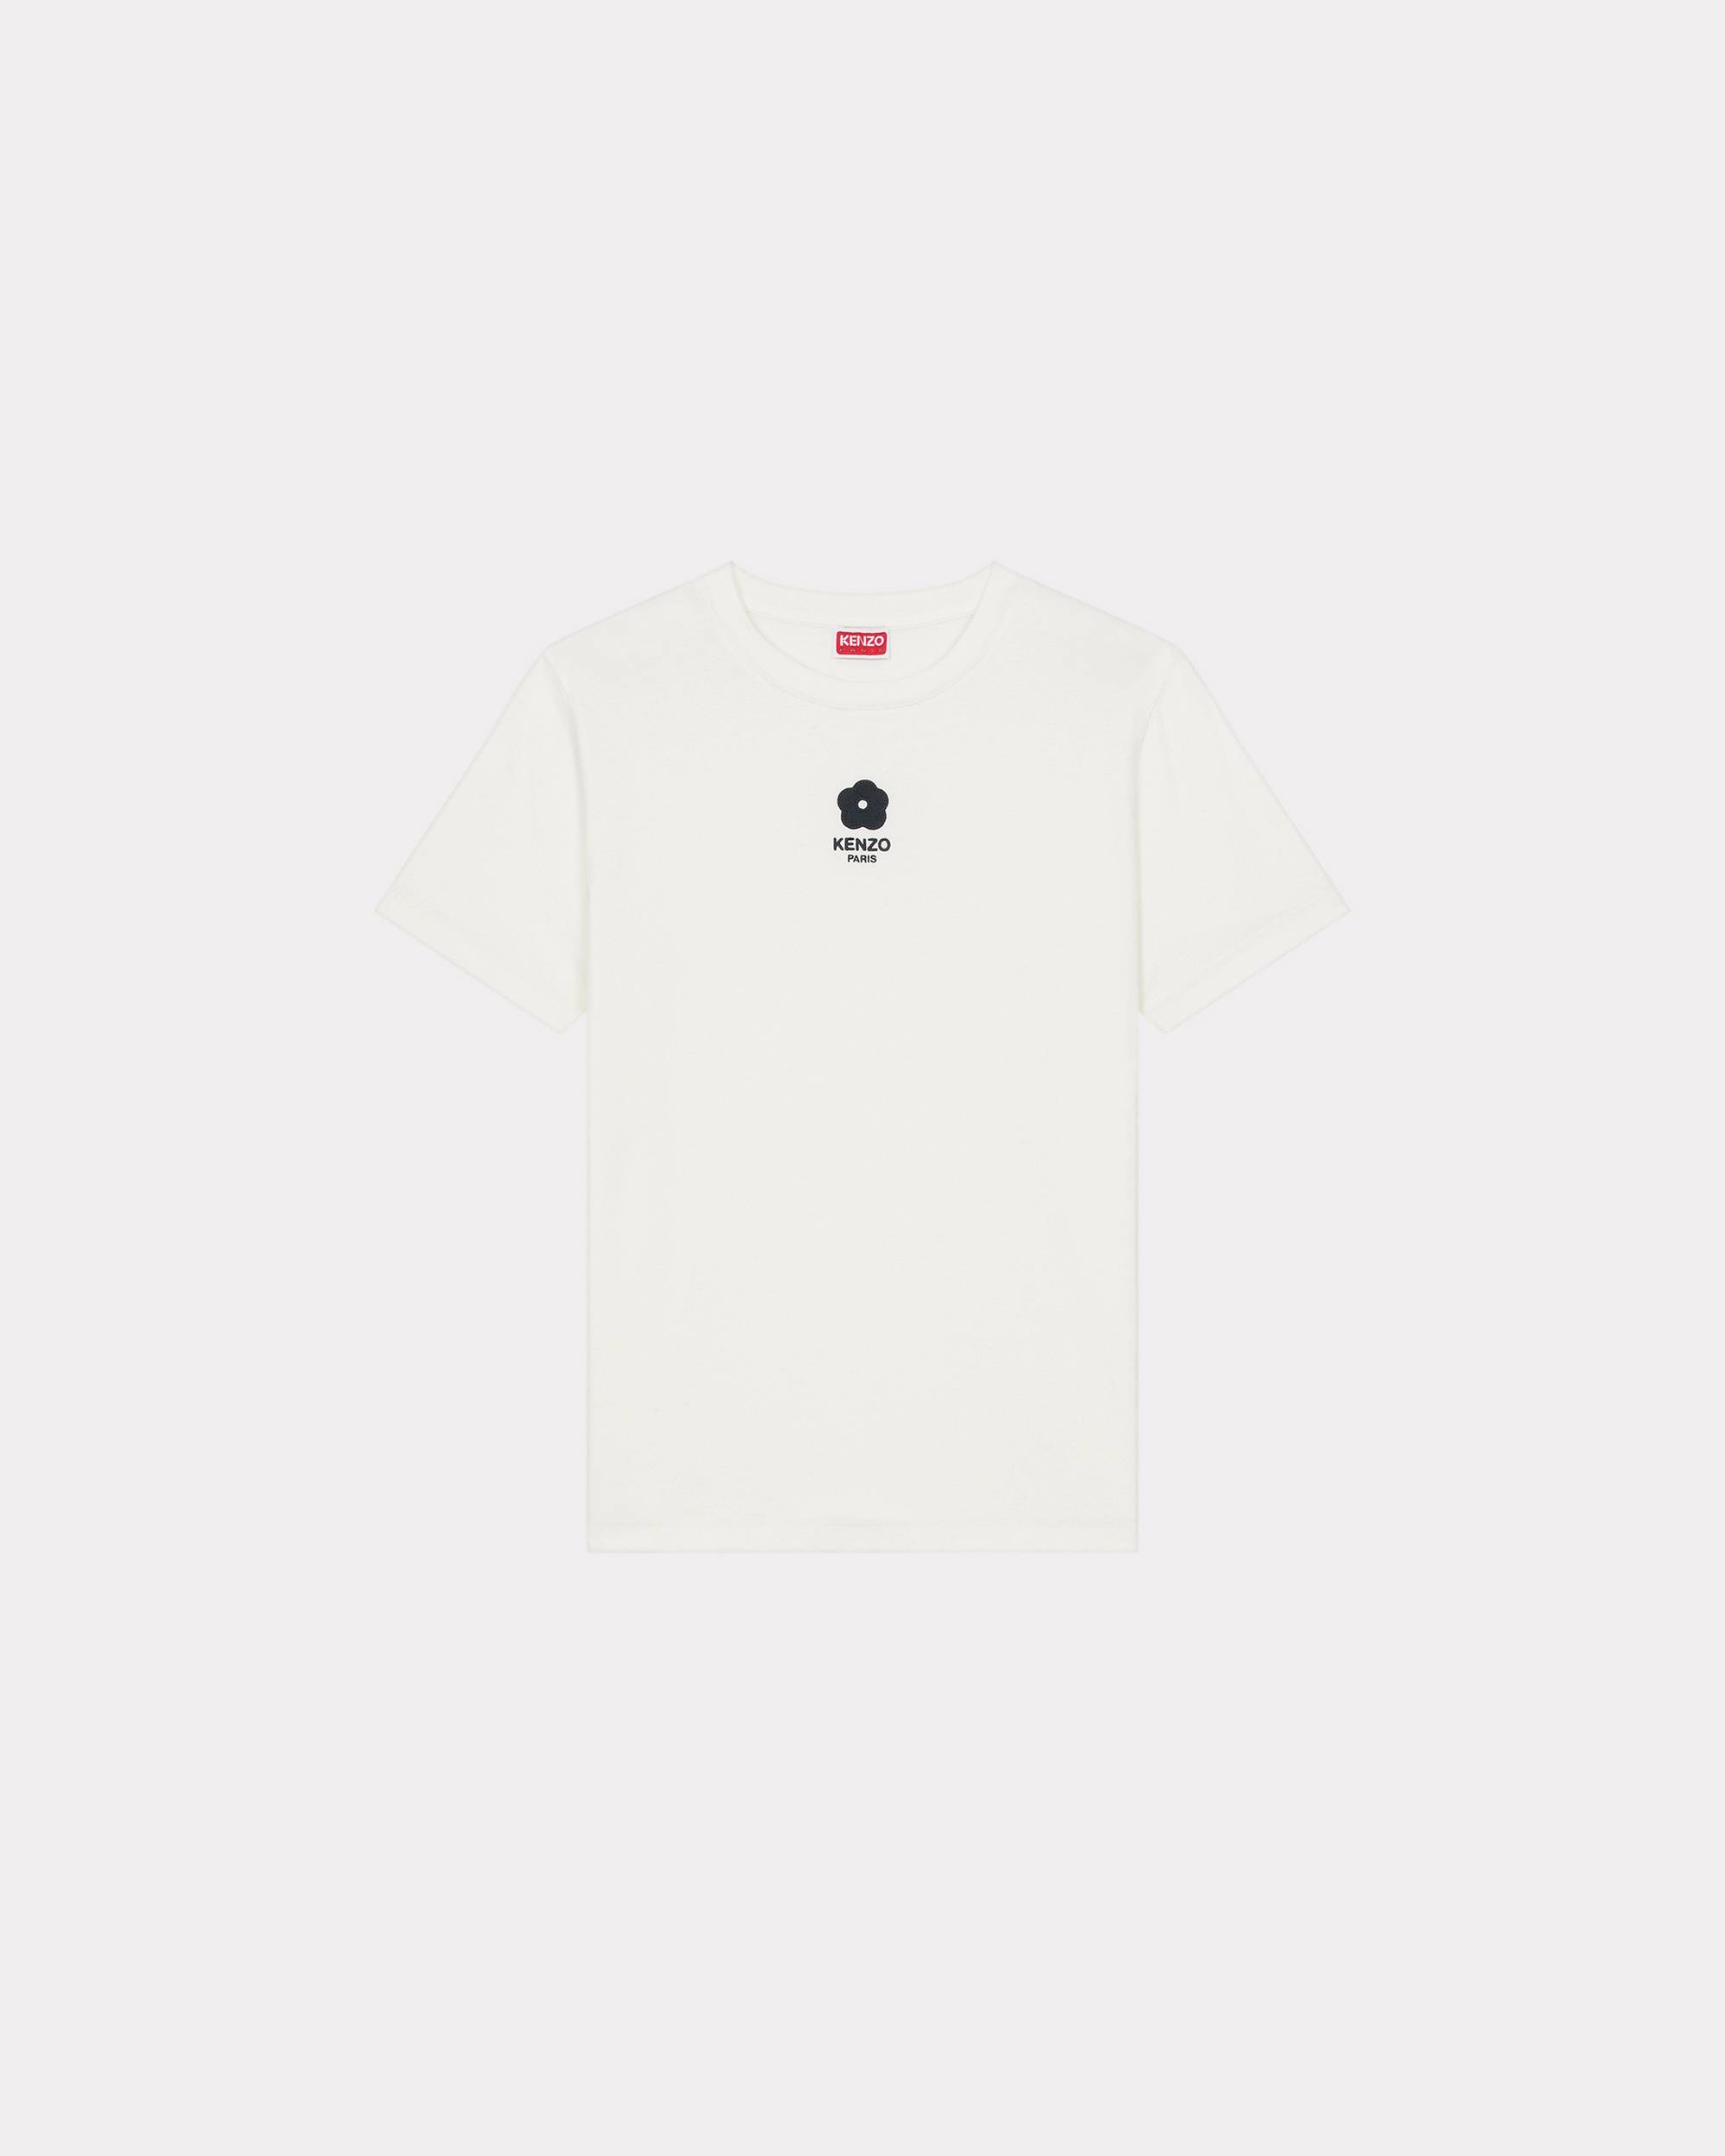 'BOKE FLOWER 2.0' Crest T-shirt - 1